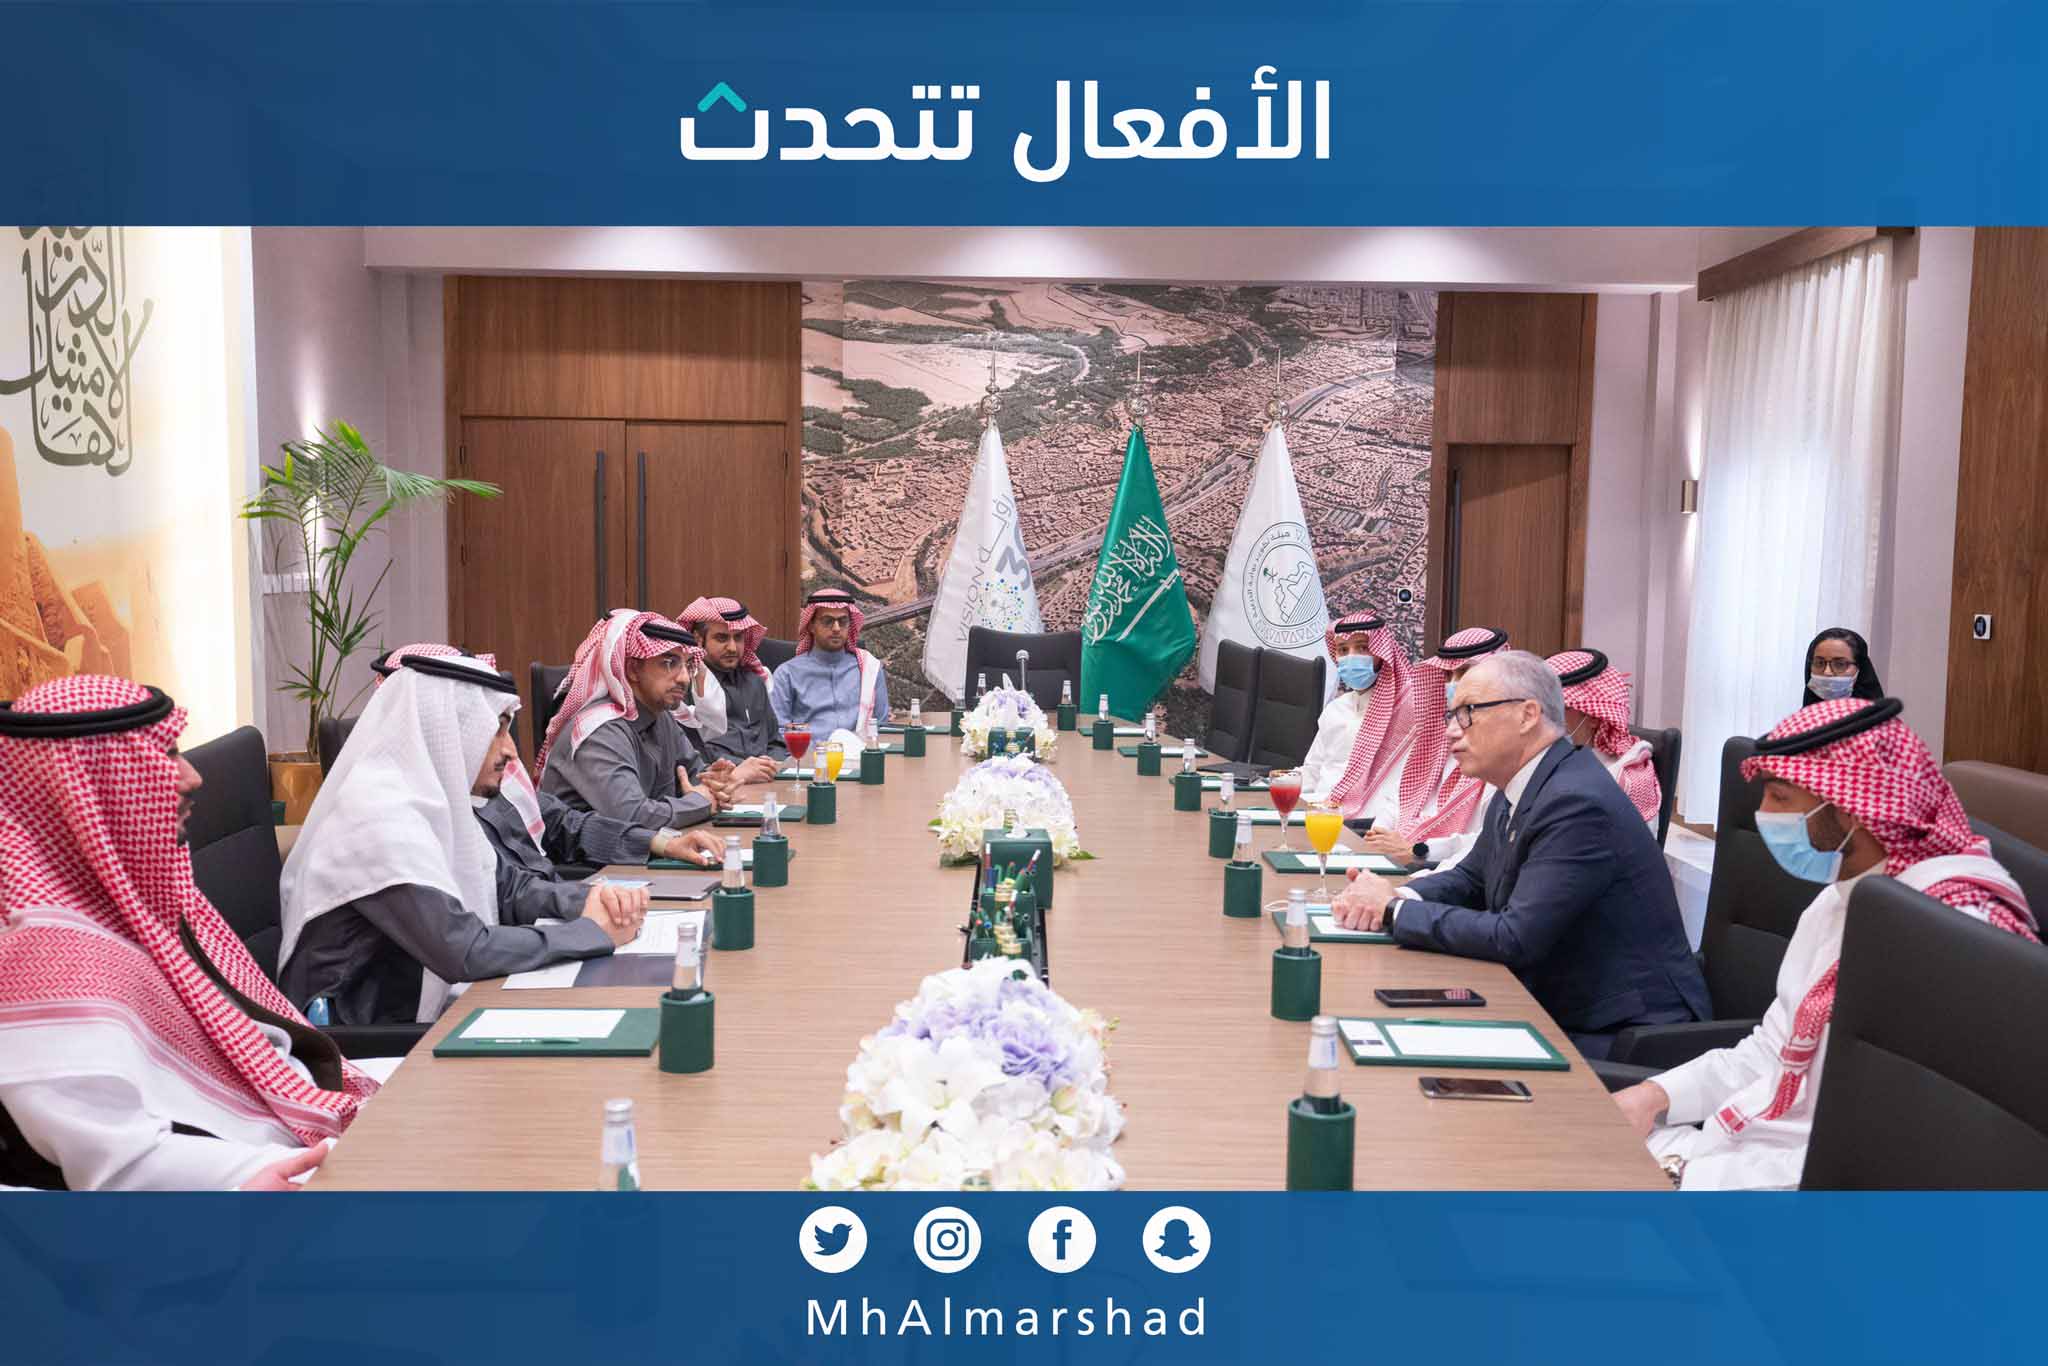 زيارة اللجنة العقارية بغرفة الرياض للرئيس التنفيذي لبوابة الدرعية 2021